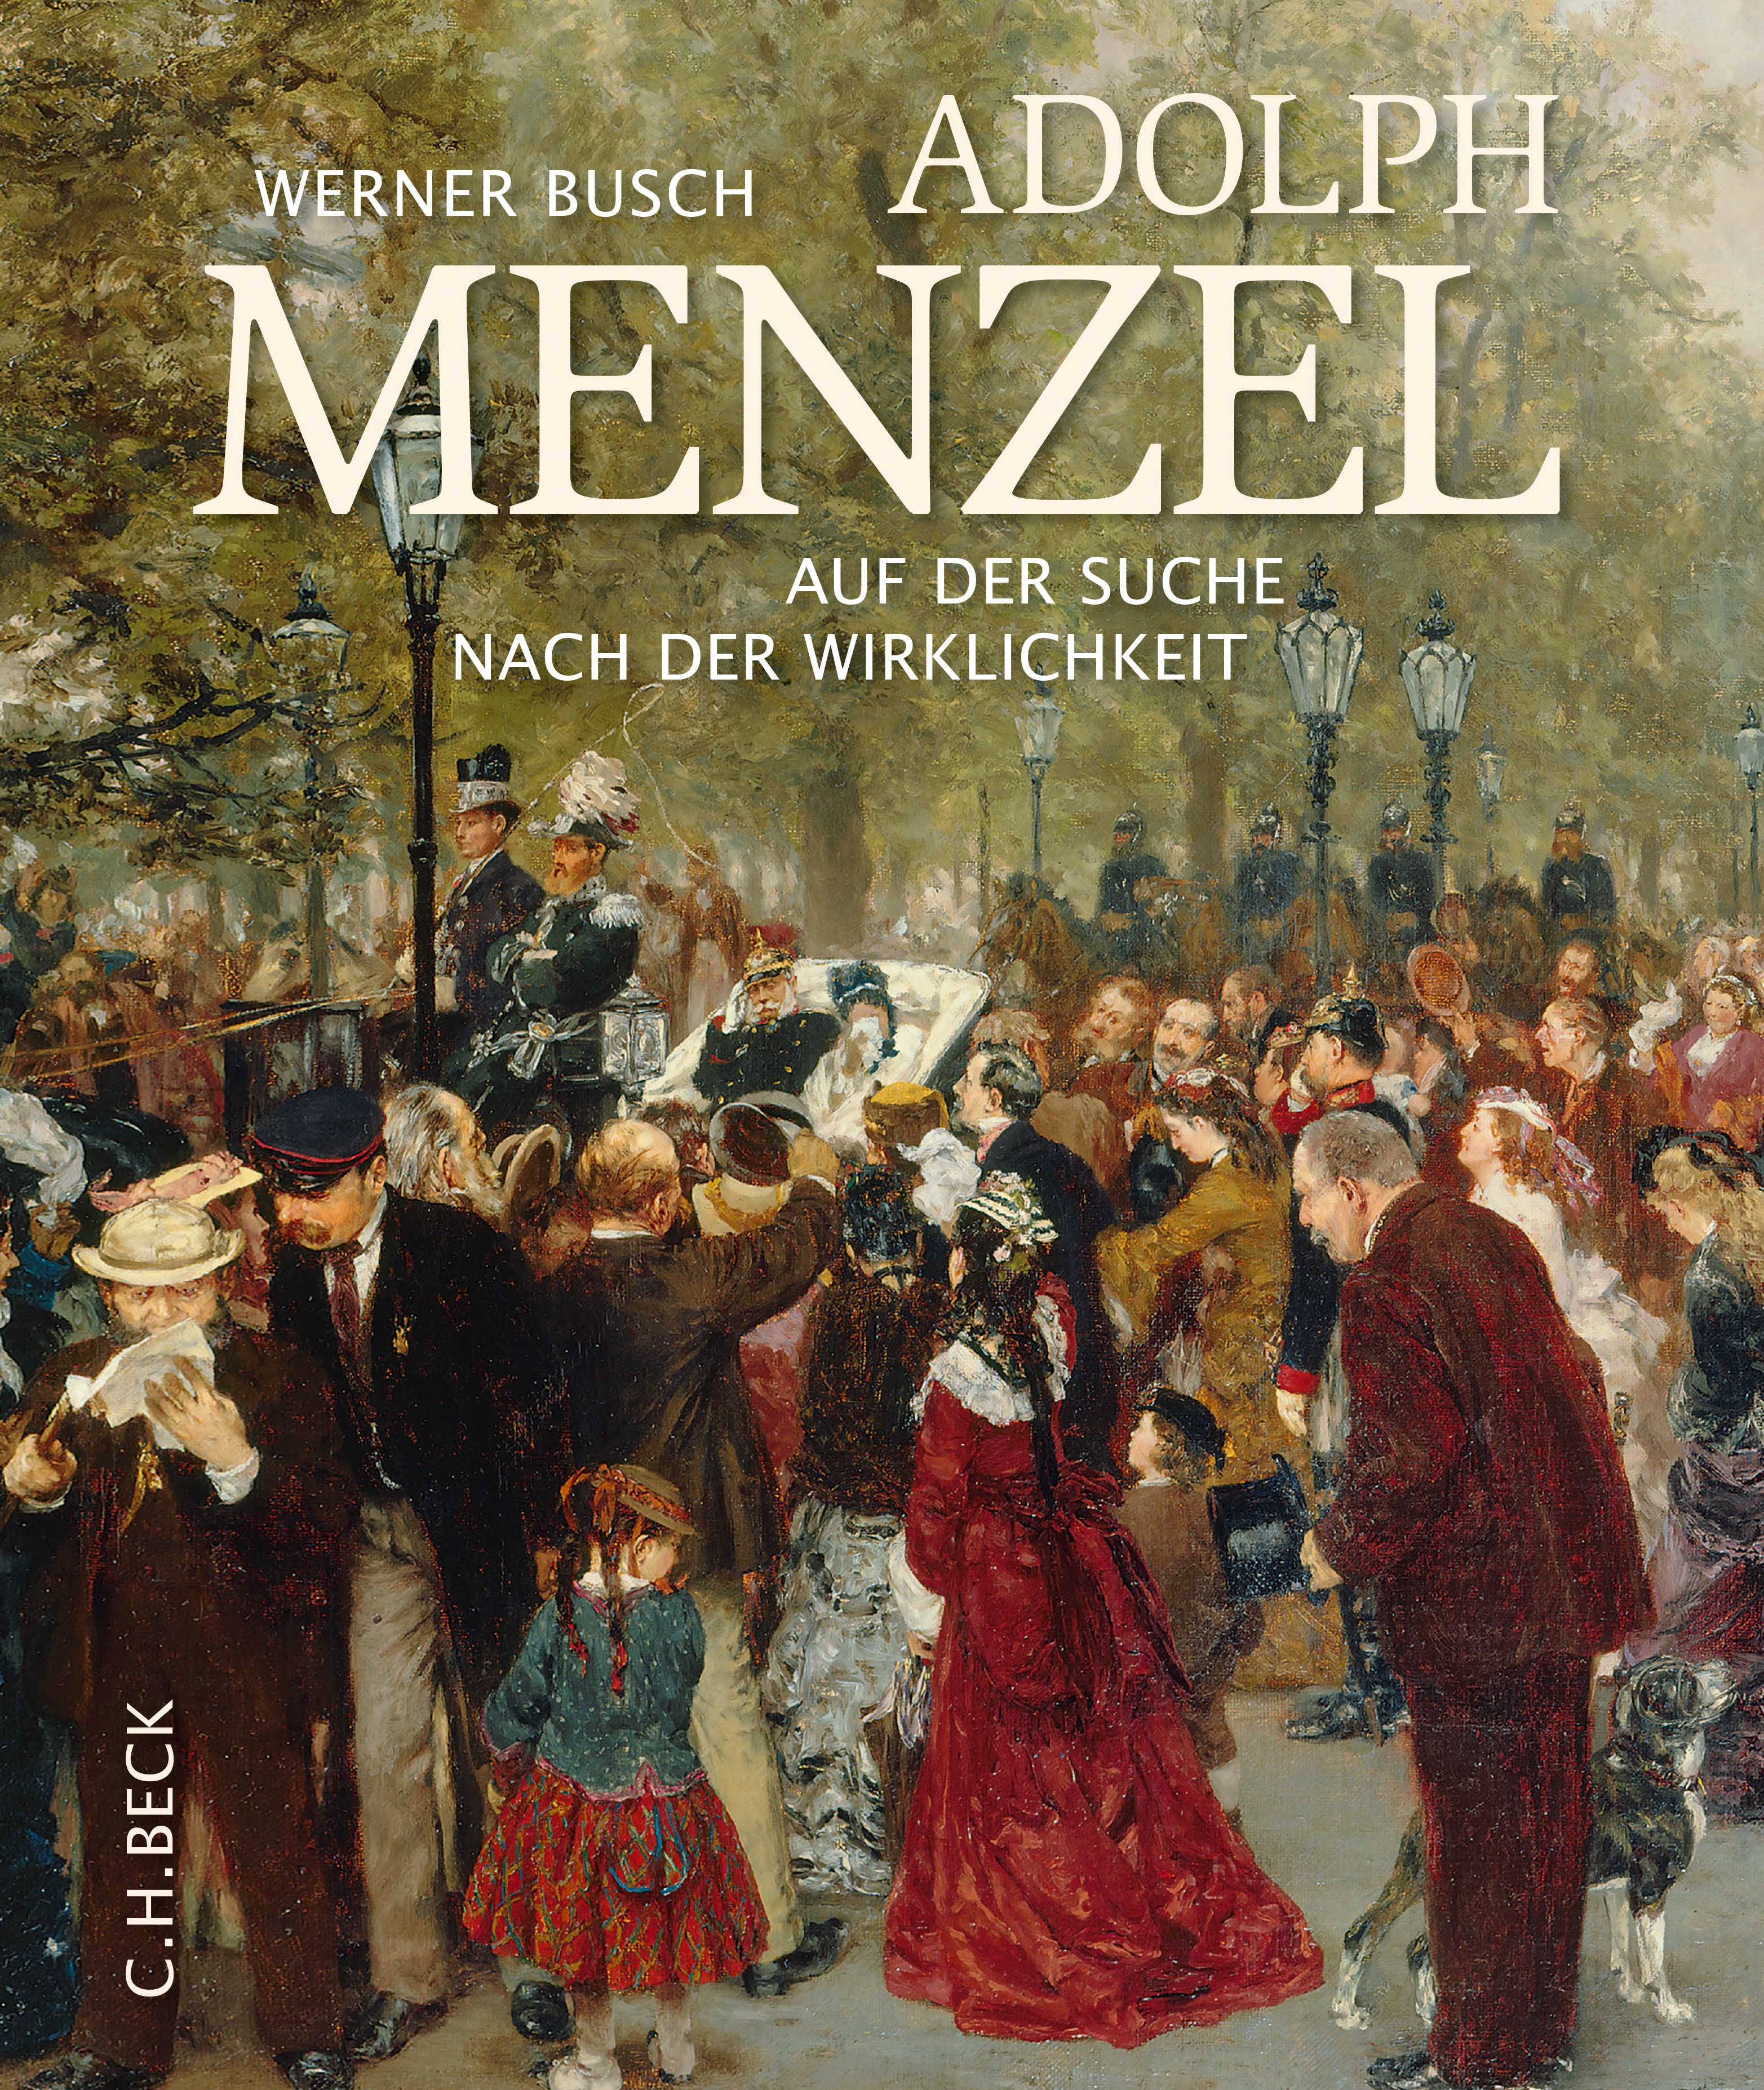 Cover: Busch, Werner, Adolph Menzel